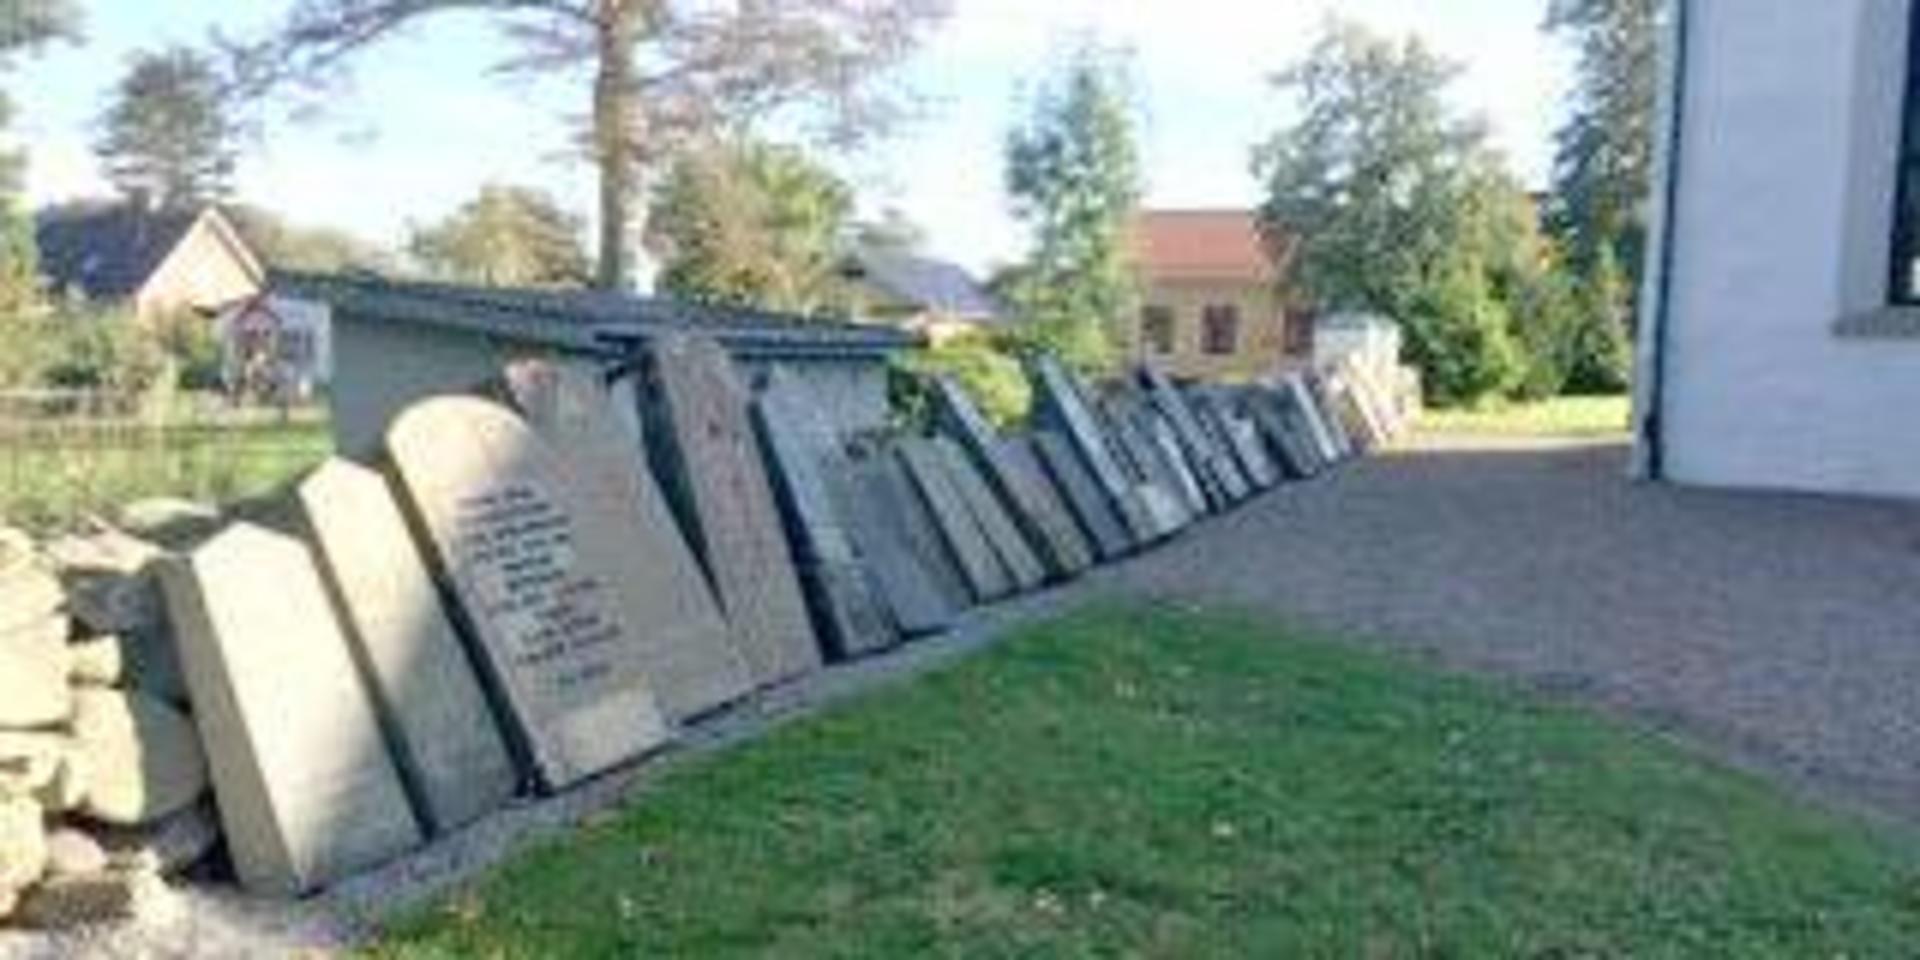 Ett 50-tal gravstenar har tagits bort från sina gravplatser och står nu uppresta mot kyrkogårdsmuren bakom kyrkan, skriver insändarskribenten.